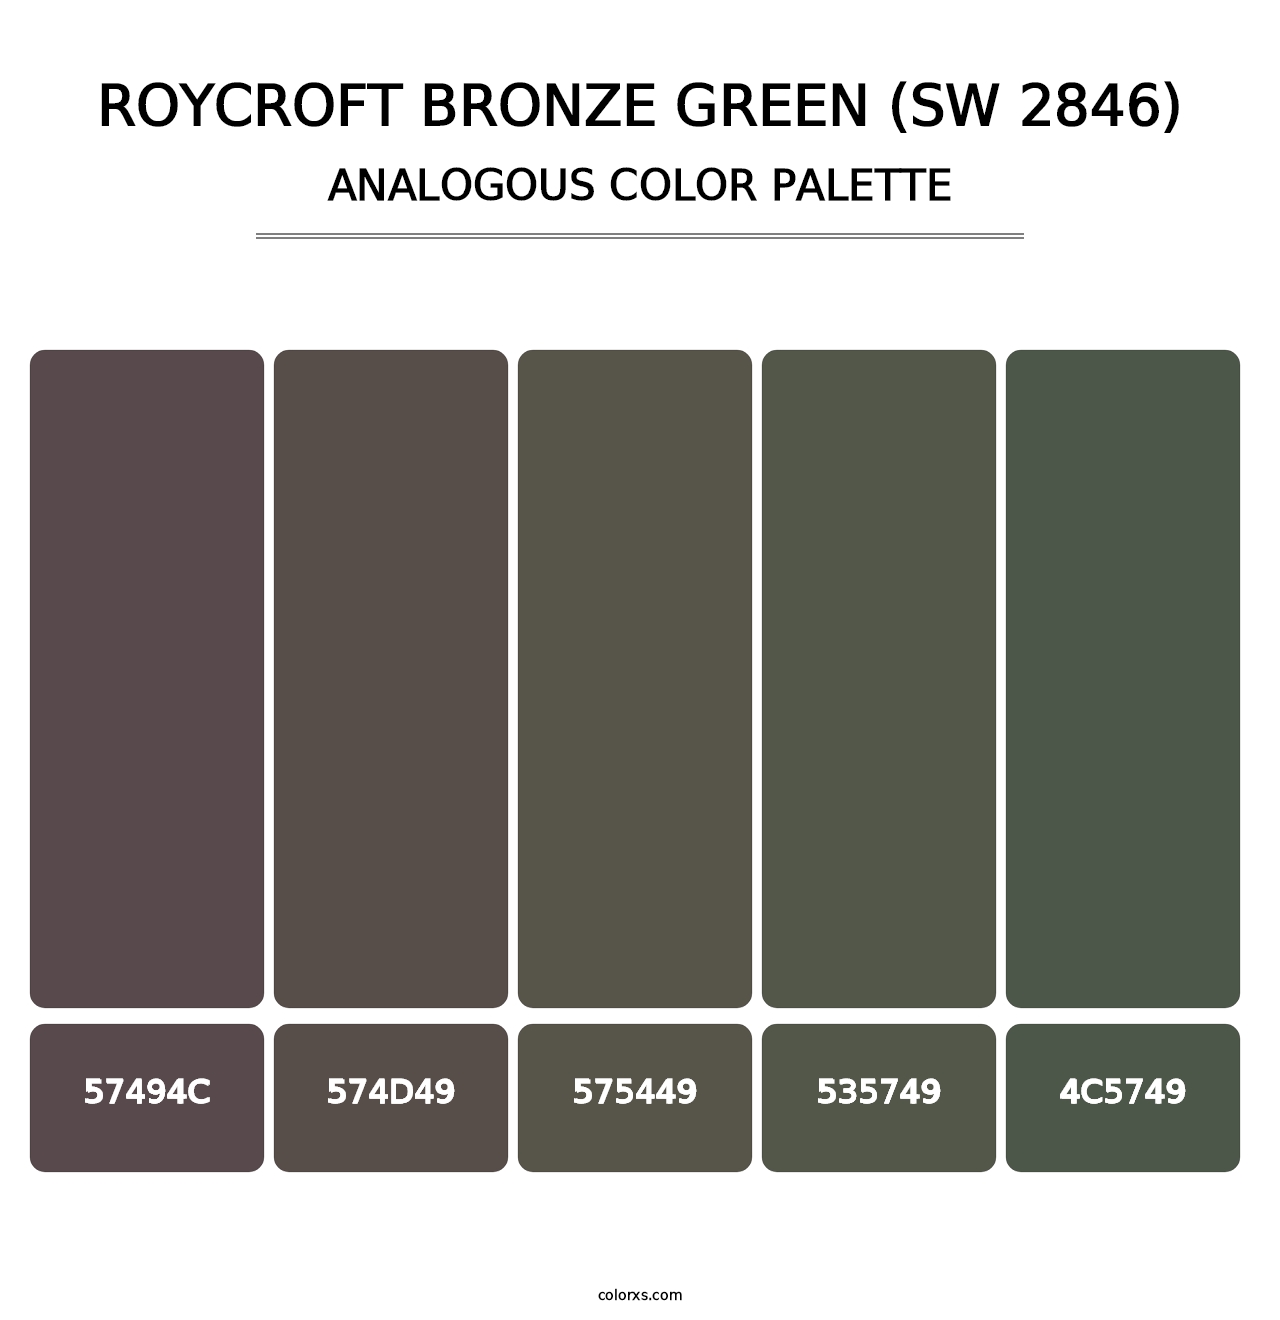 Roycroft Bronze Green (SW 2846) - Analogous Color Palette